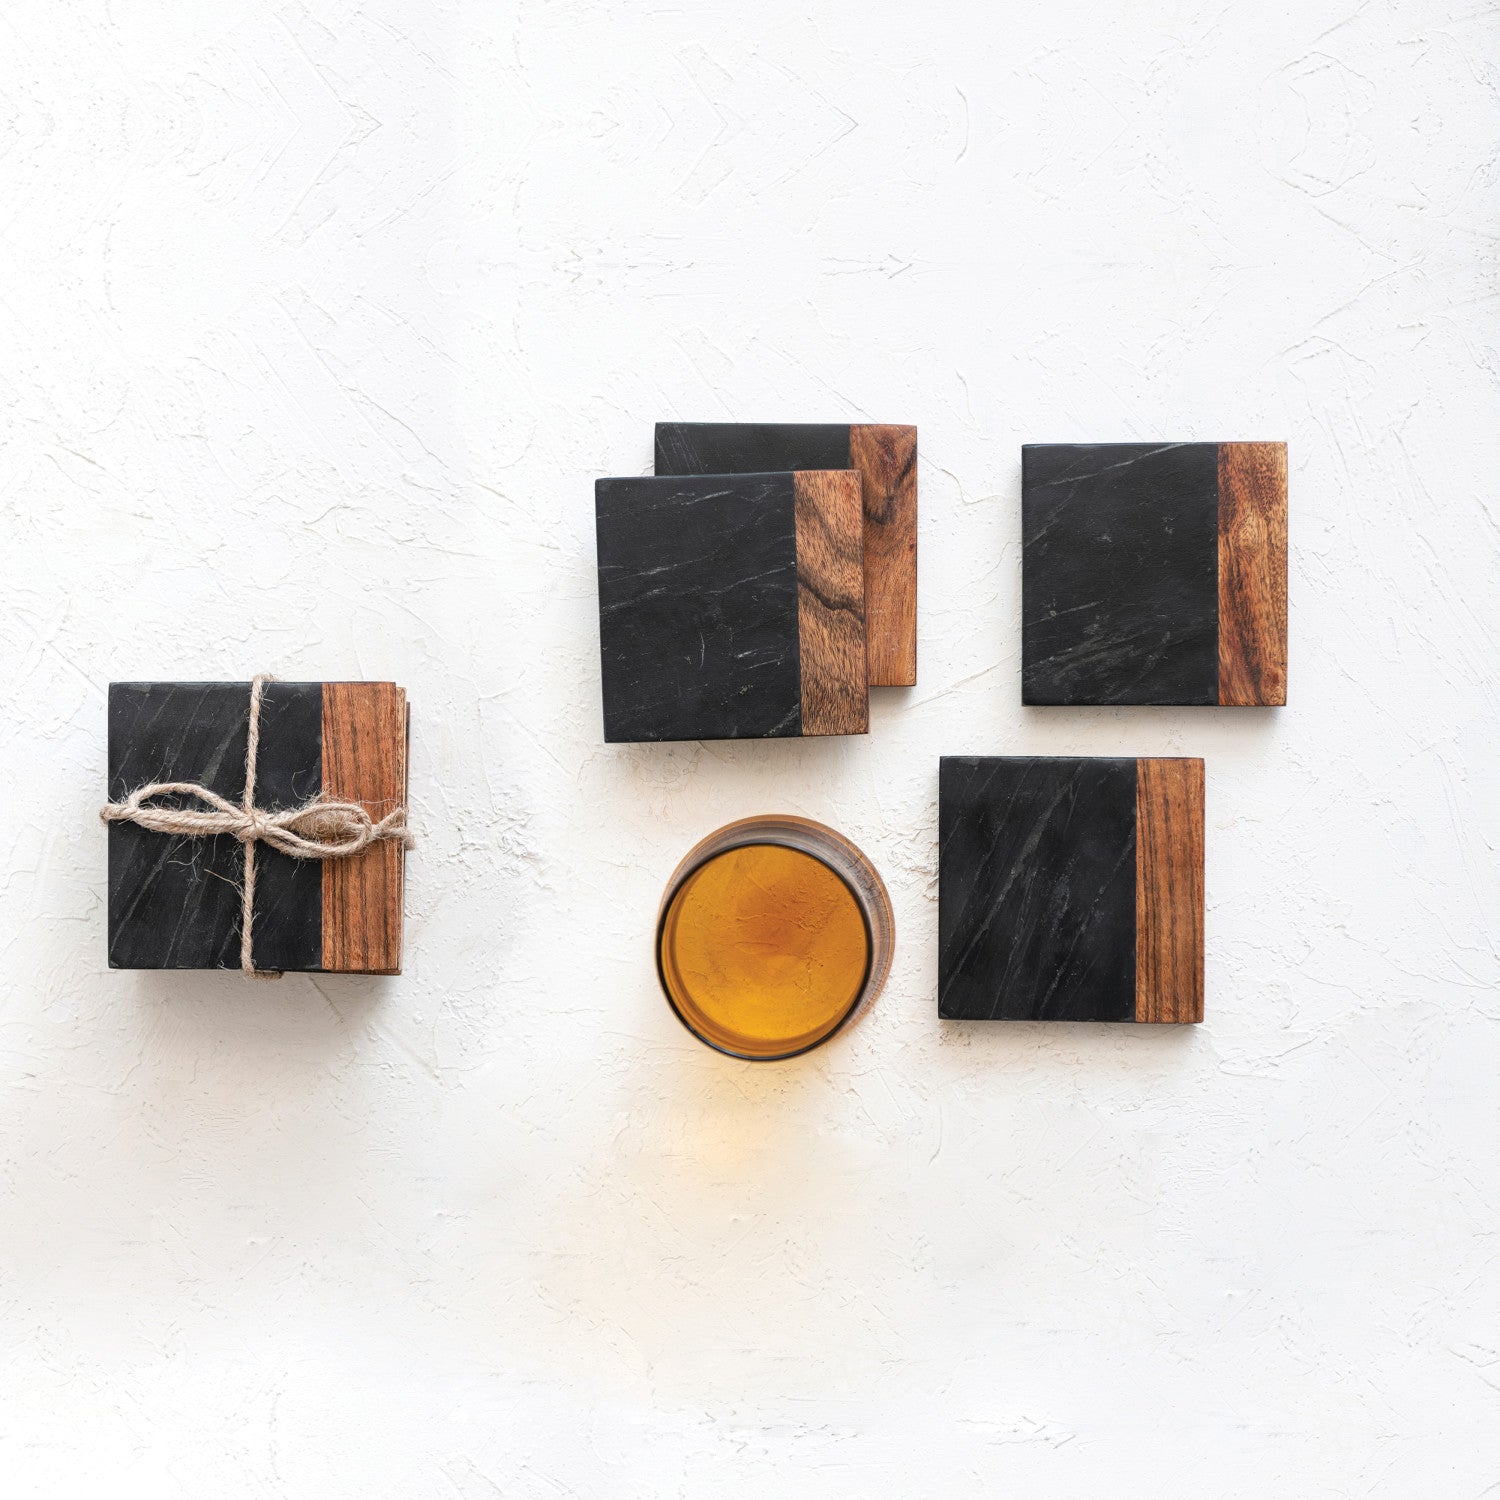 Marble & Acacia Wood Coasters, Black & Natural